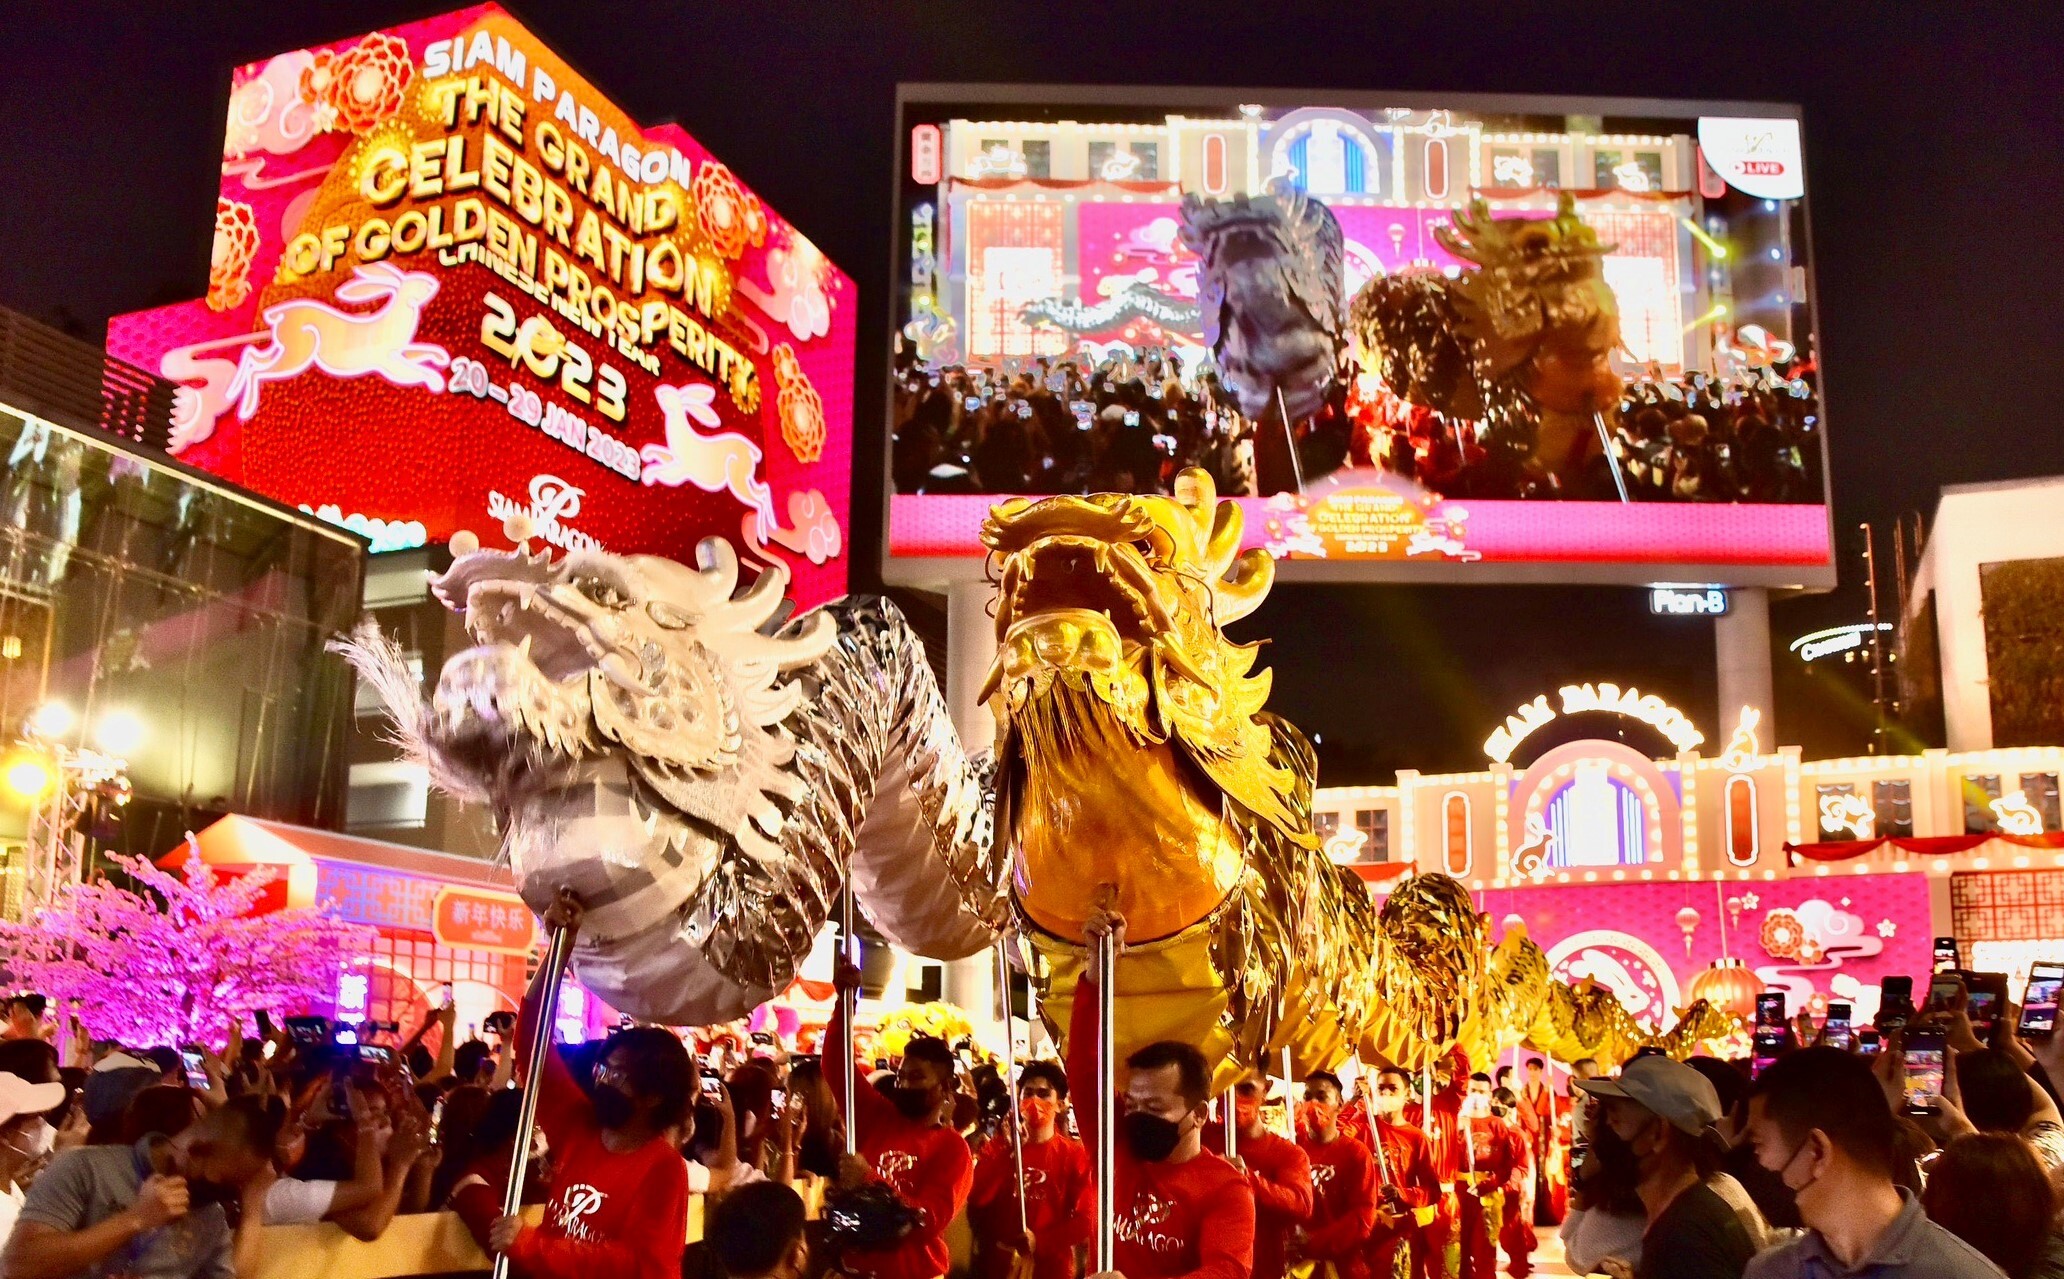 สยามพารากอน ฉลองตรุษจีนยิ่งใหญ่ปีกระต่ายทอง ในงาน "Siam Paragon The Grand Celebration of Golden Prosperity 2023" 20-29 มกราคม 2566 ที่สยามพารากอน